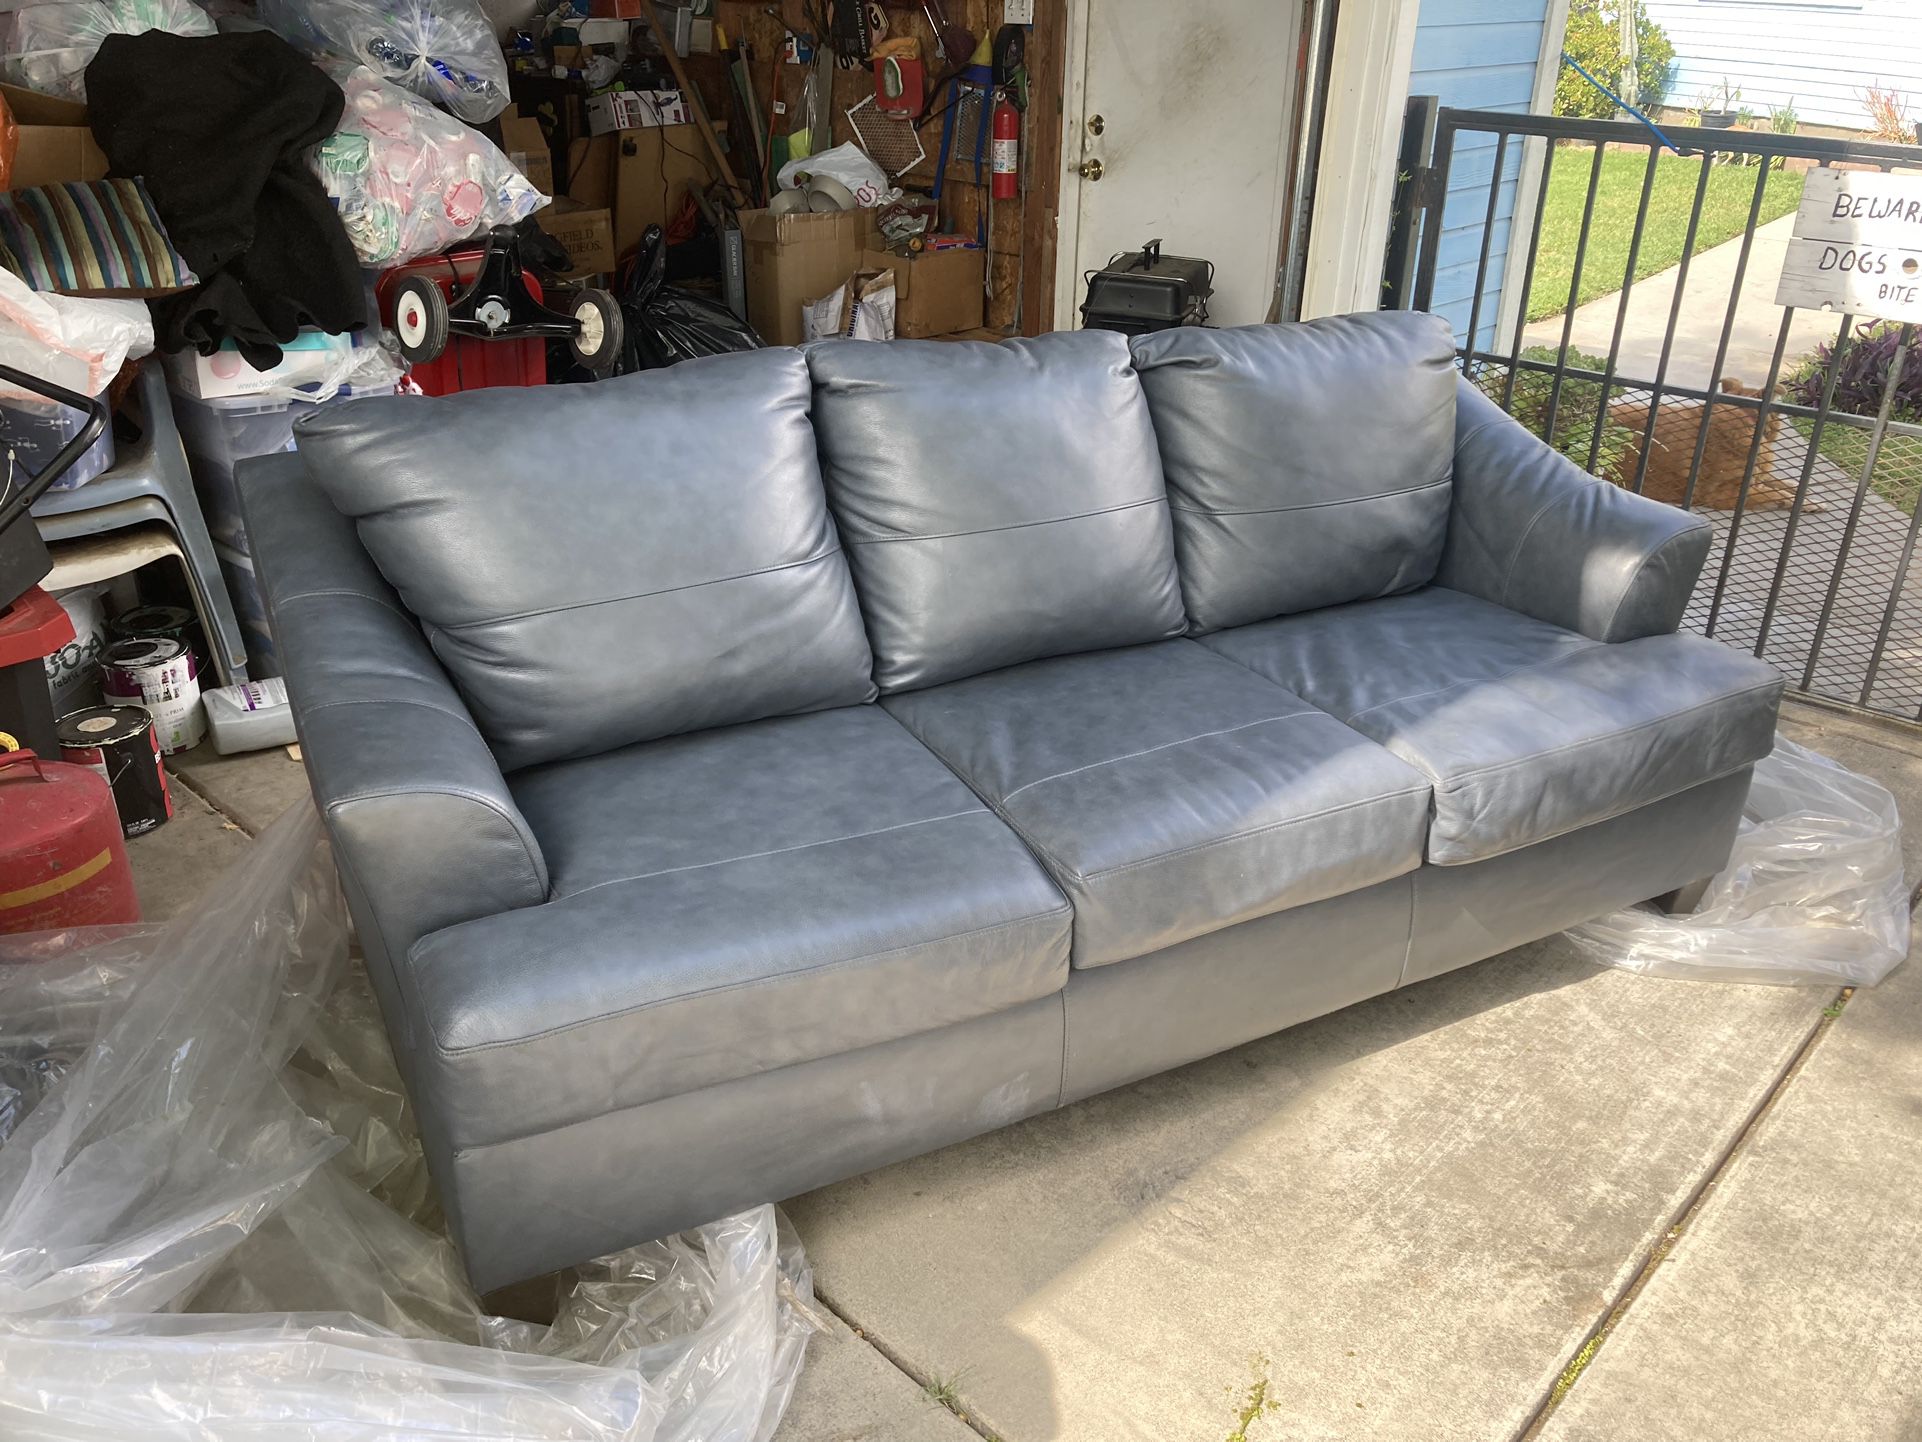 Lane Leather Sofa